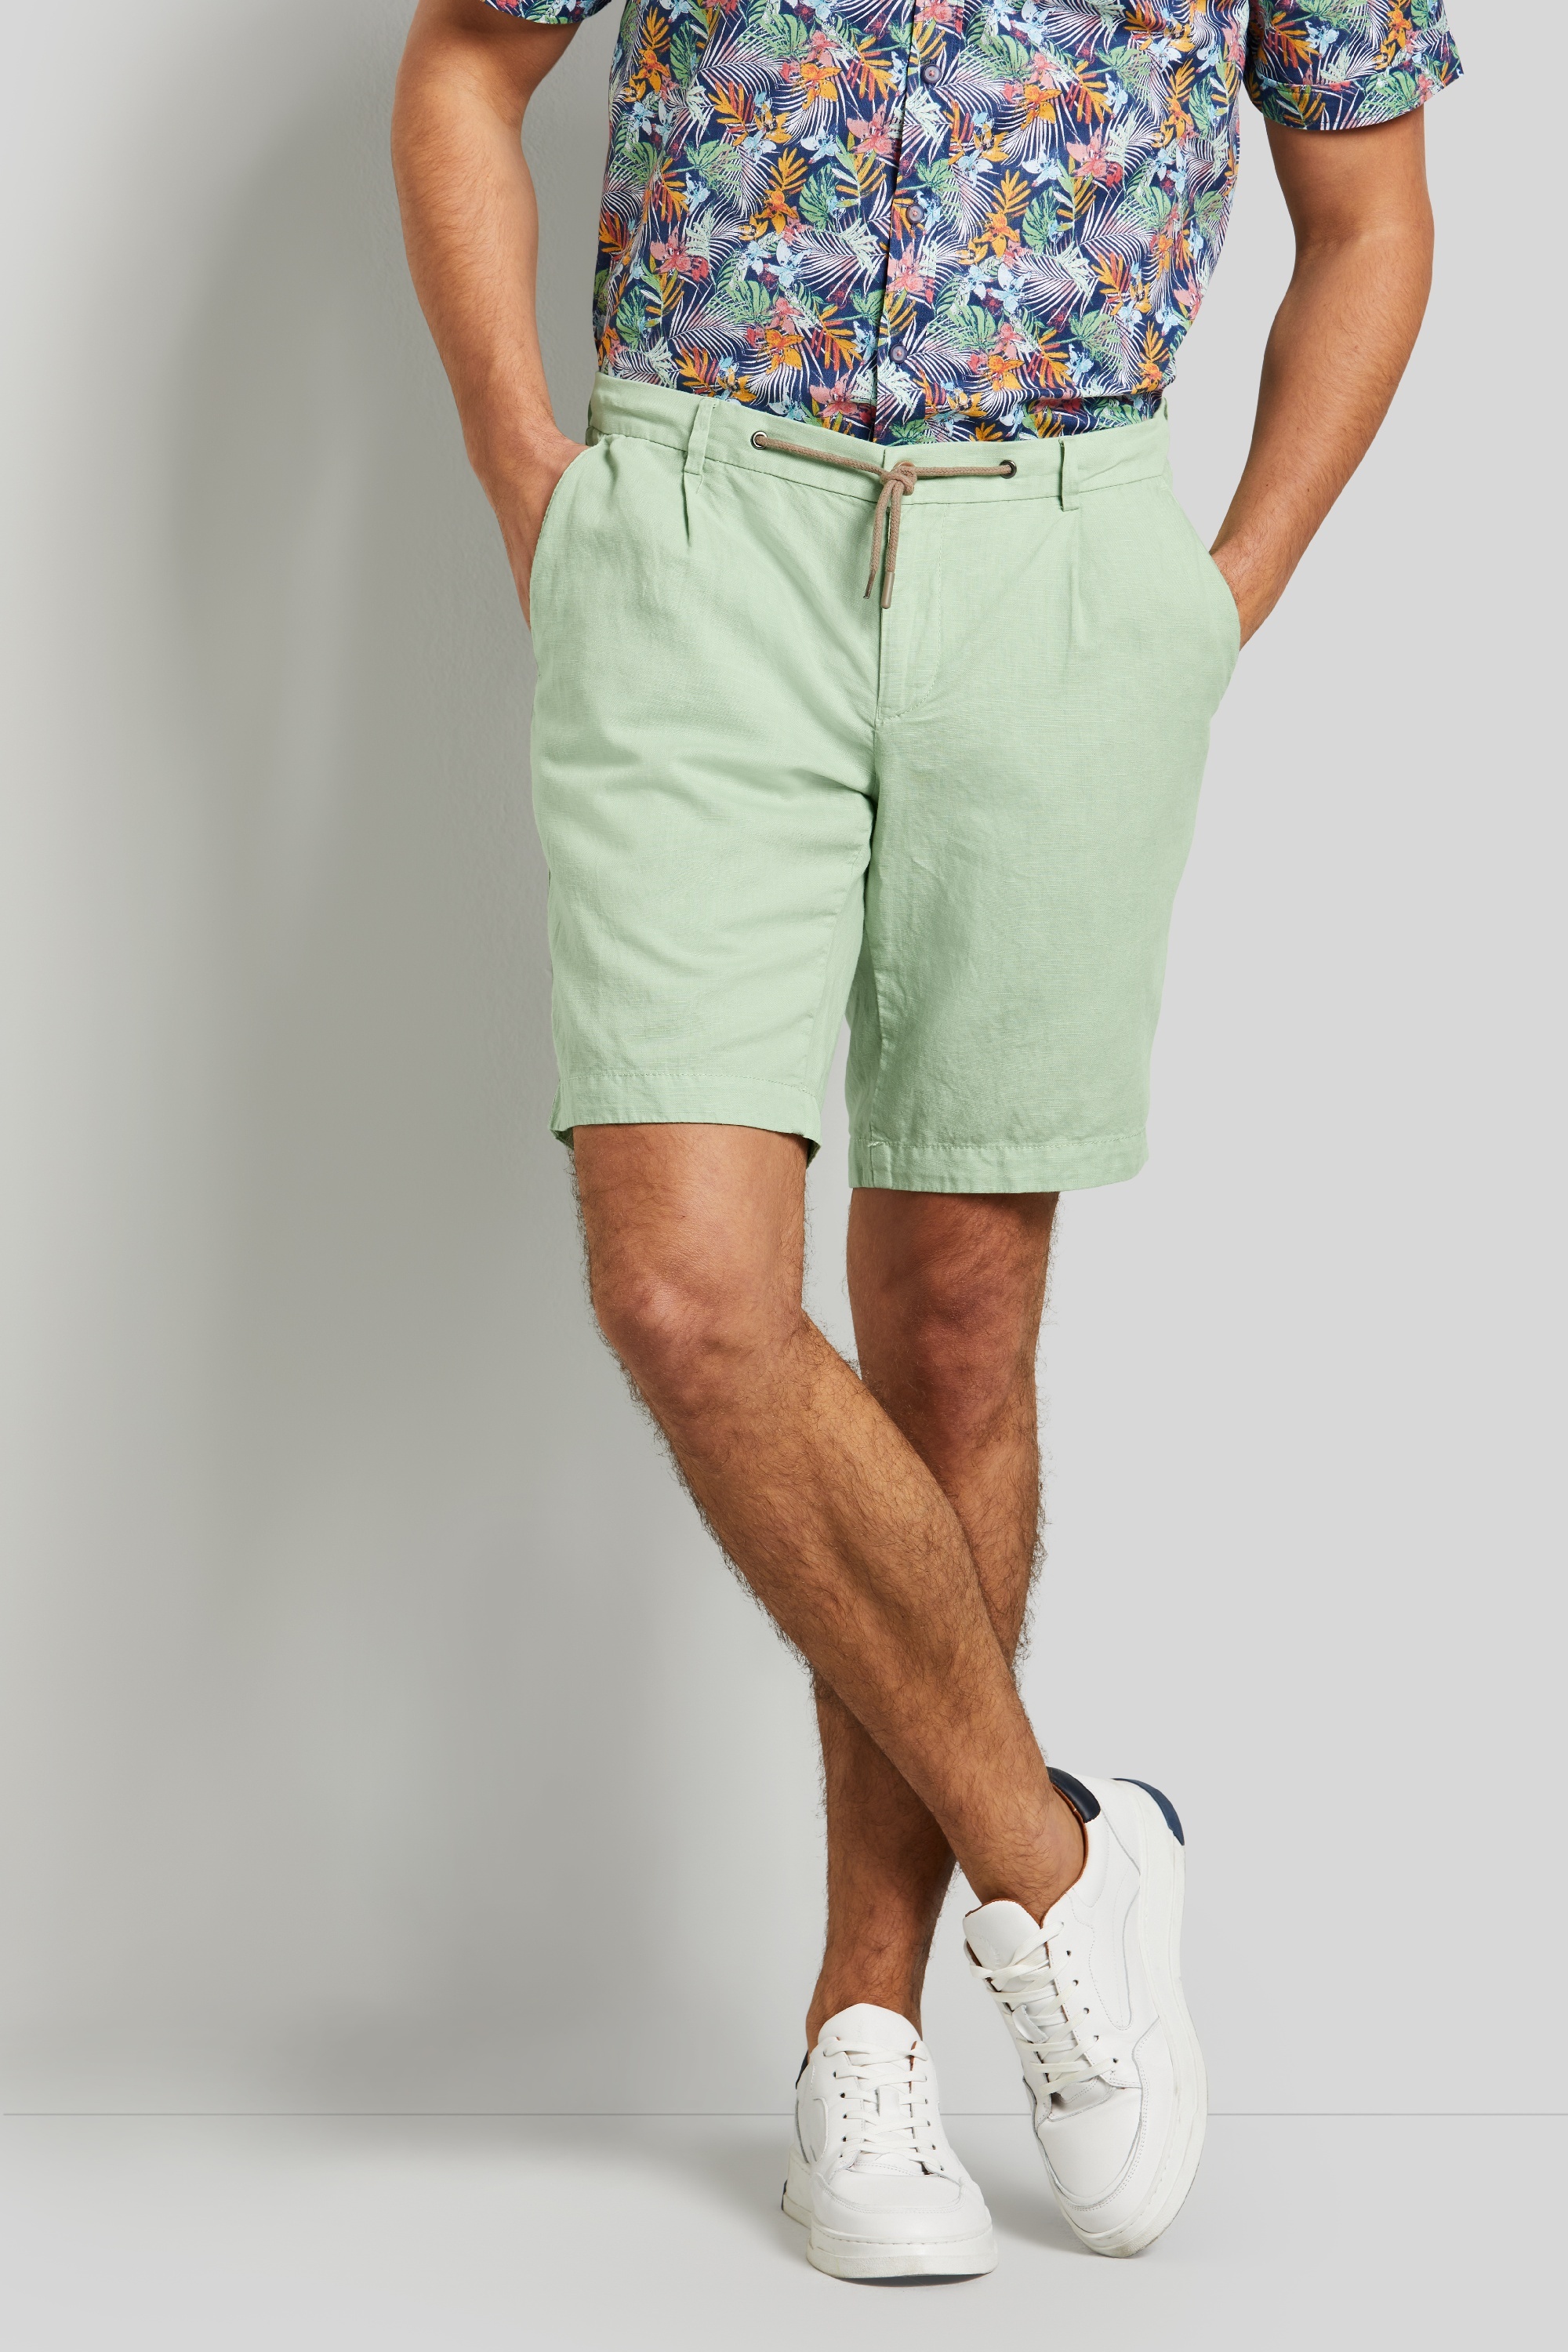 Bermuda-Shorts in sportlicher Optik in mint